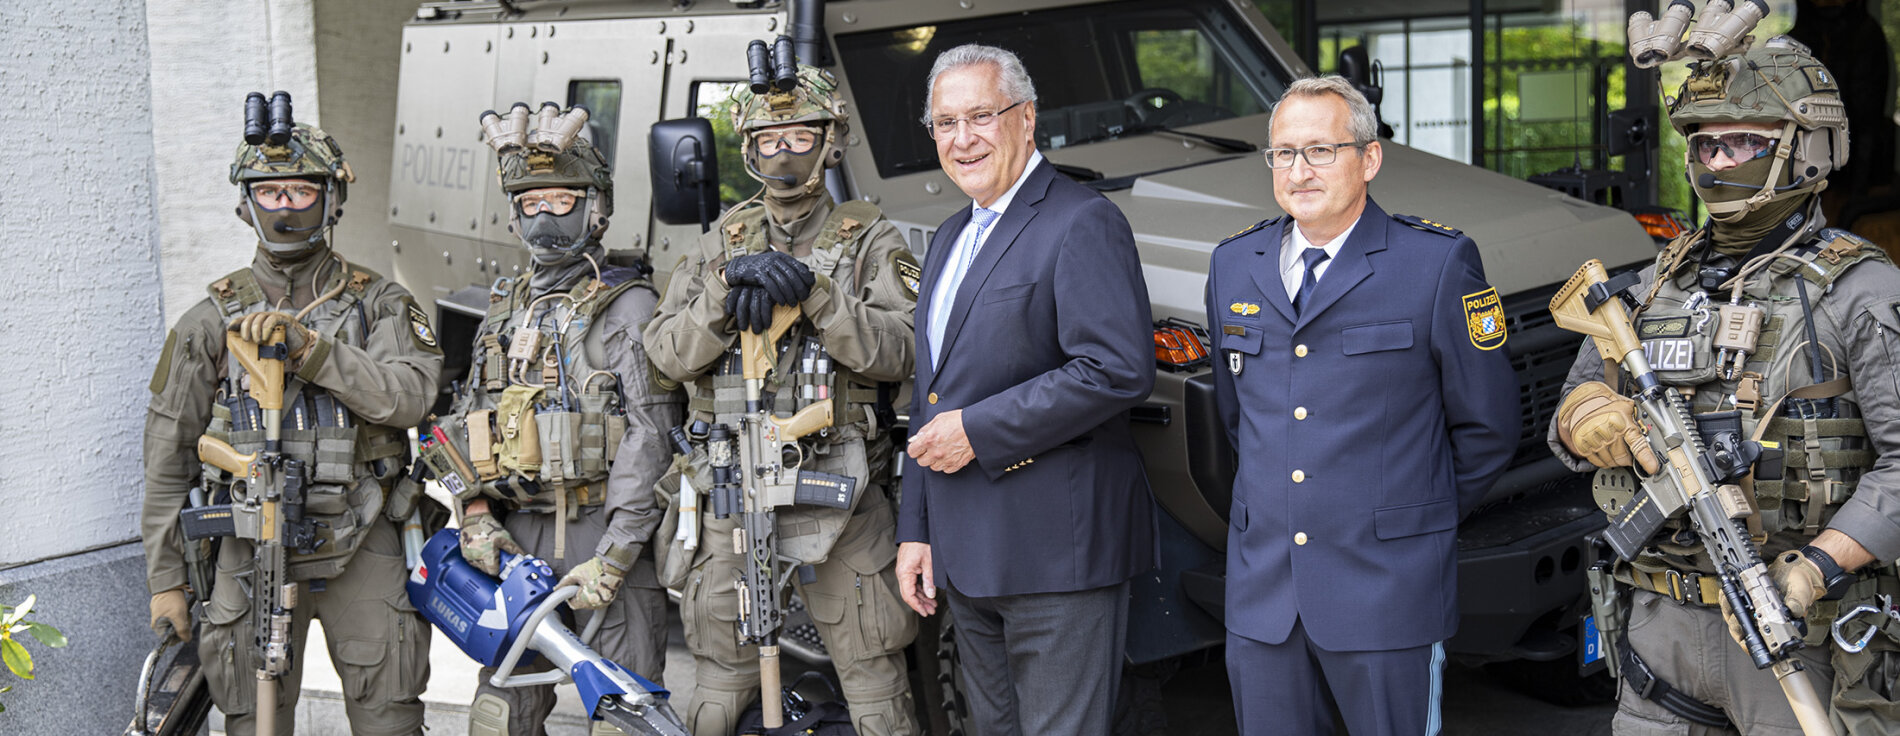 Herrmann, Huber und vier Polizisten der Spezialeinheiten in voller Ausrüstung und Uniform